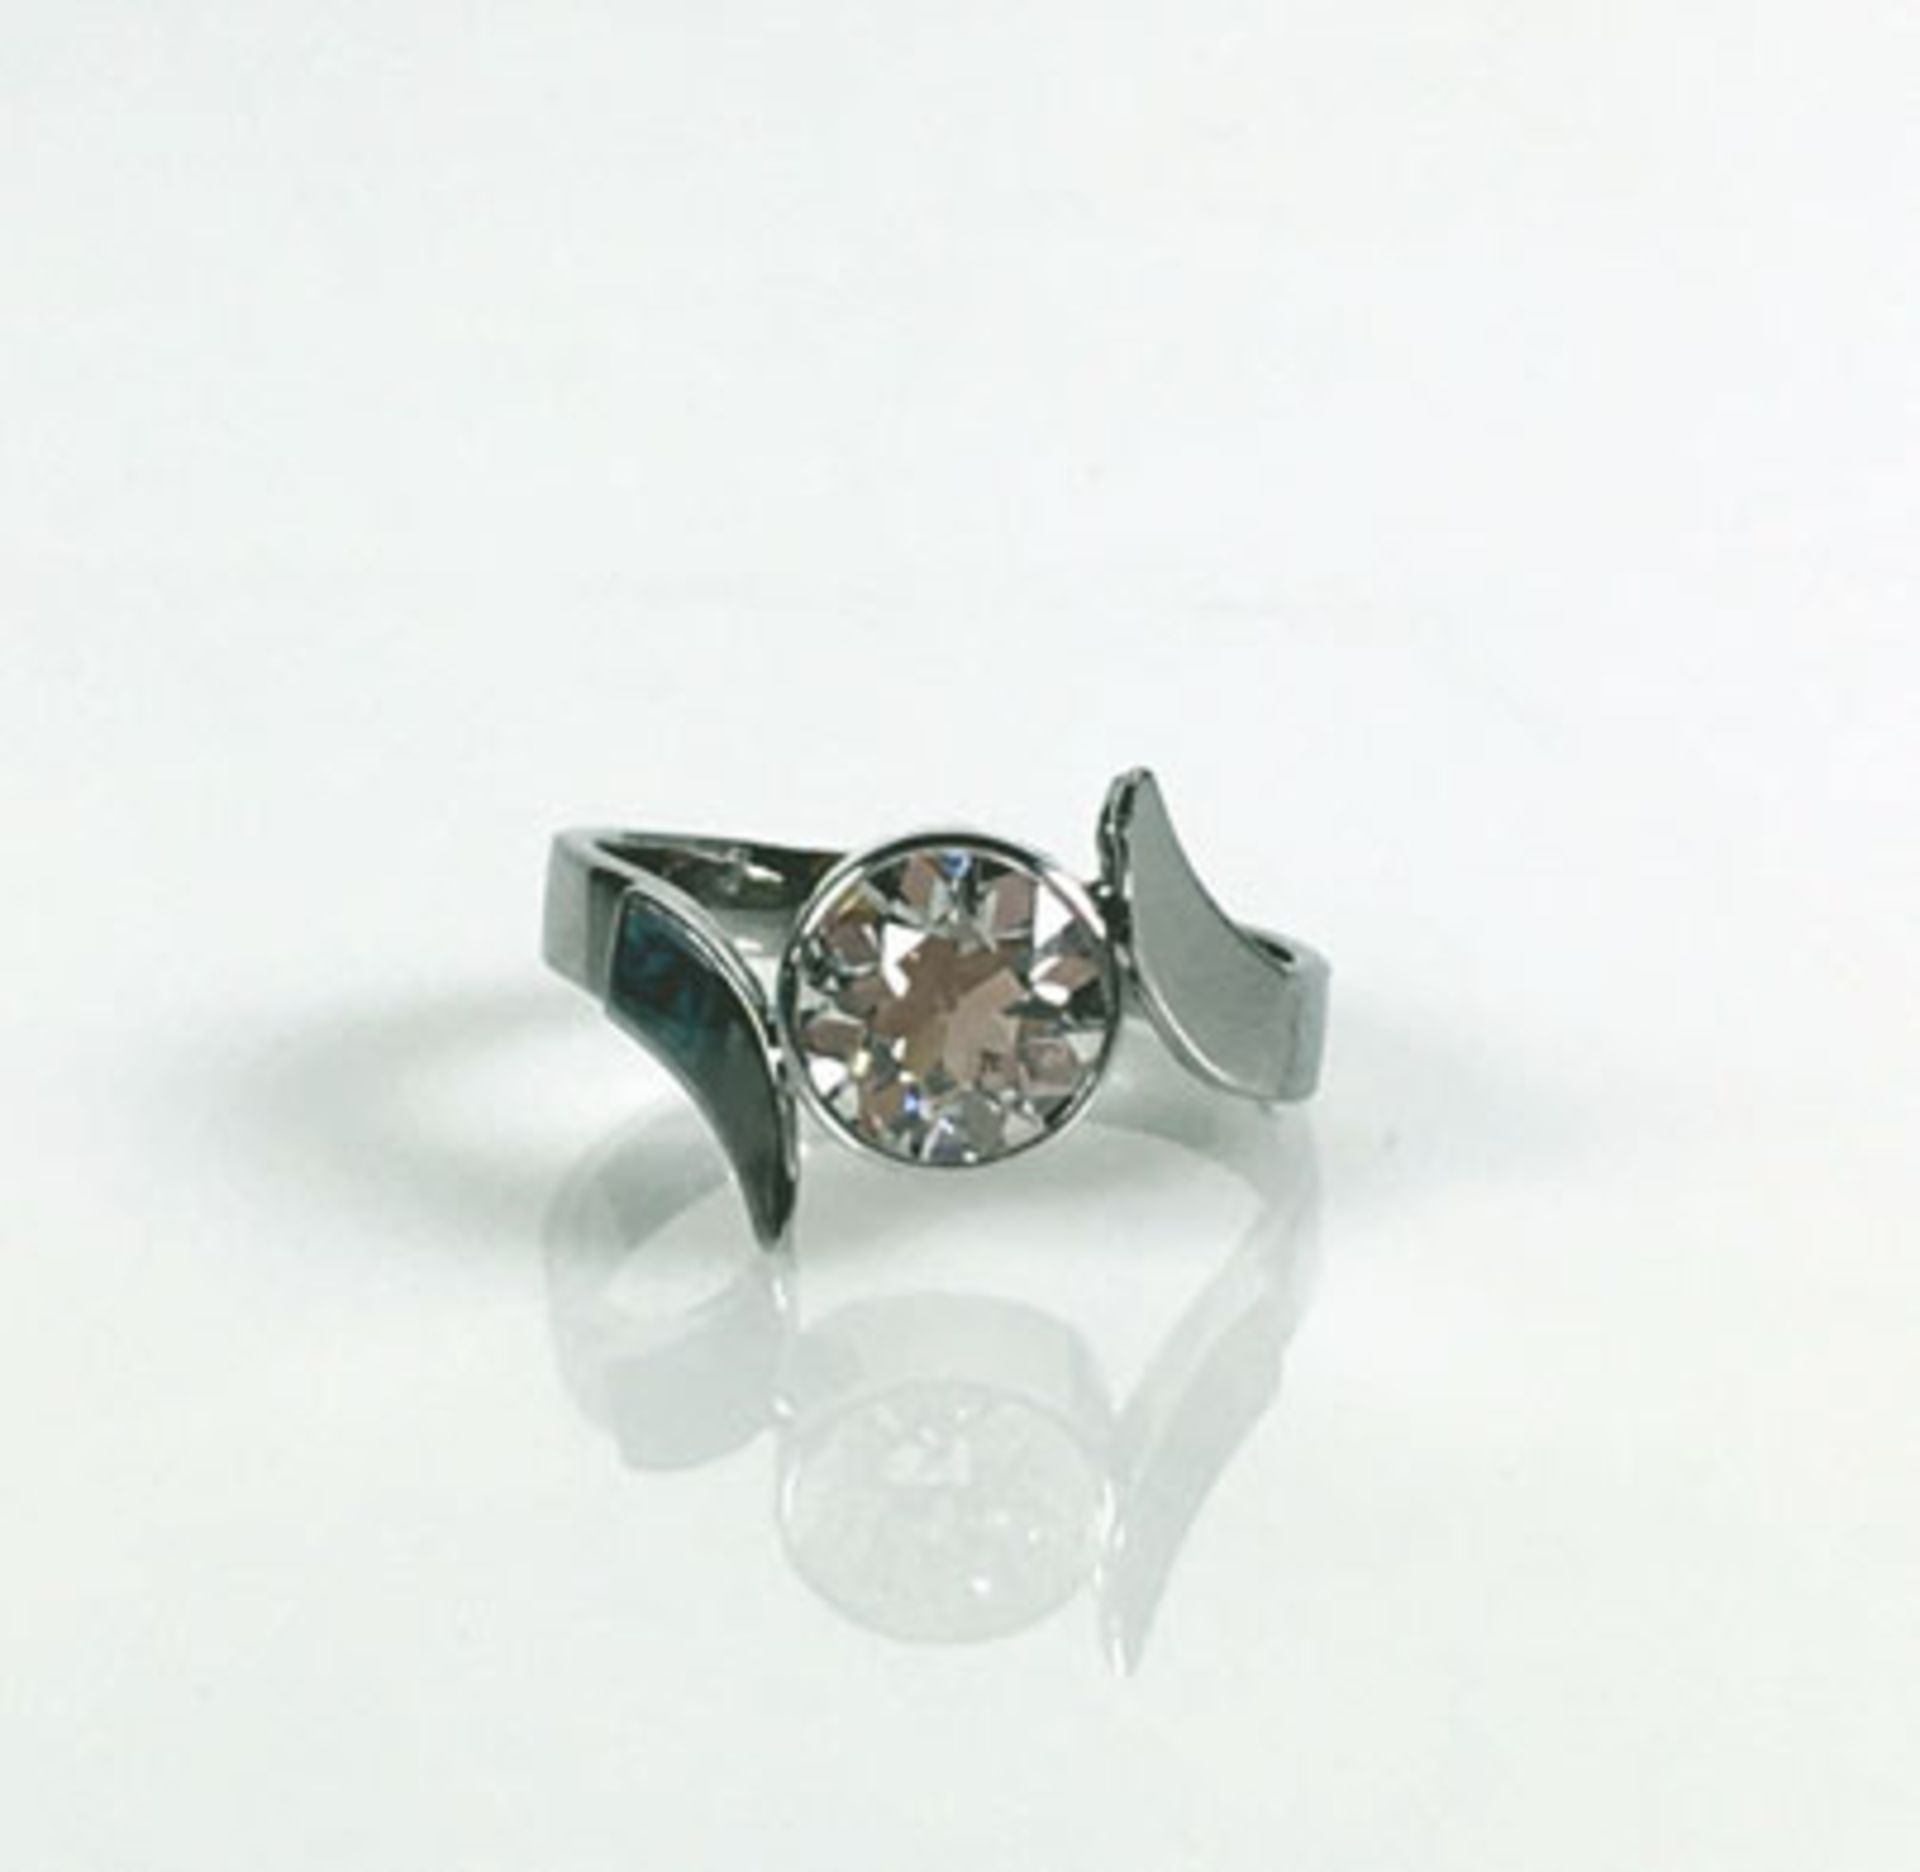 Damen Solitär-Diamantring (ca. 1940) in moderner 14ct WG-Schiene; Diamant von ca. 1,50ct W-VS;